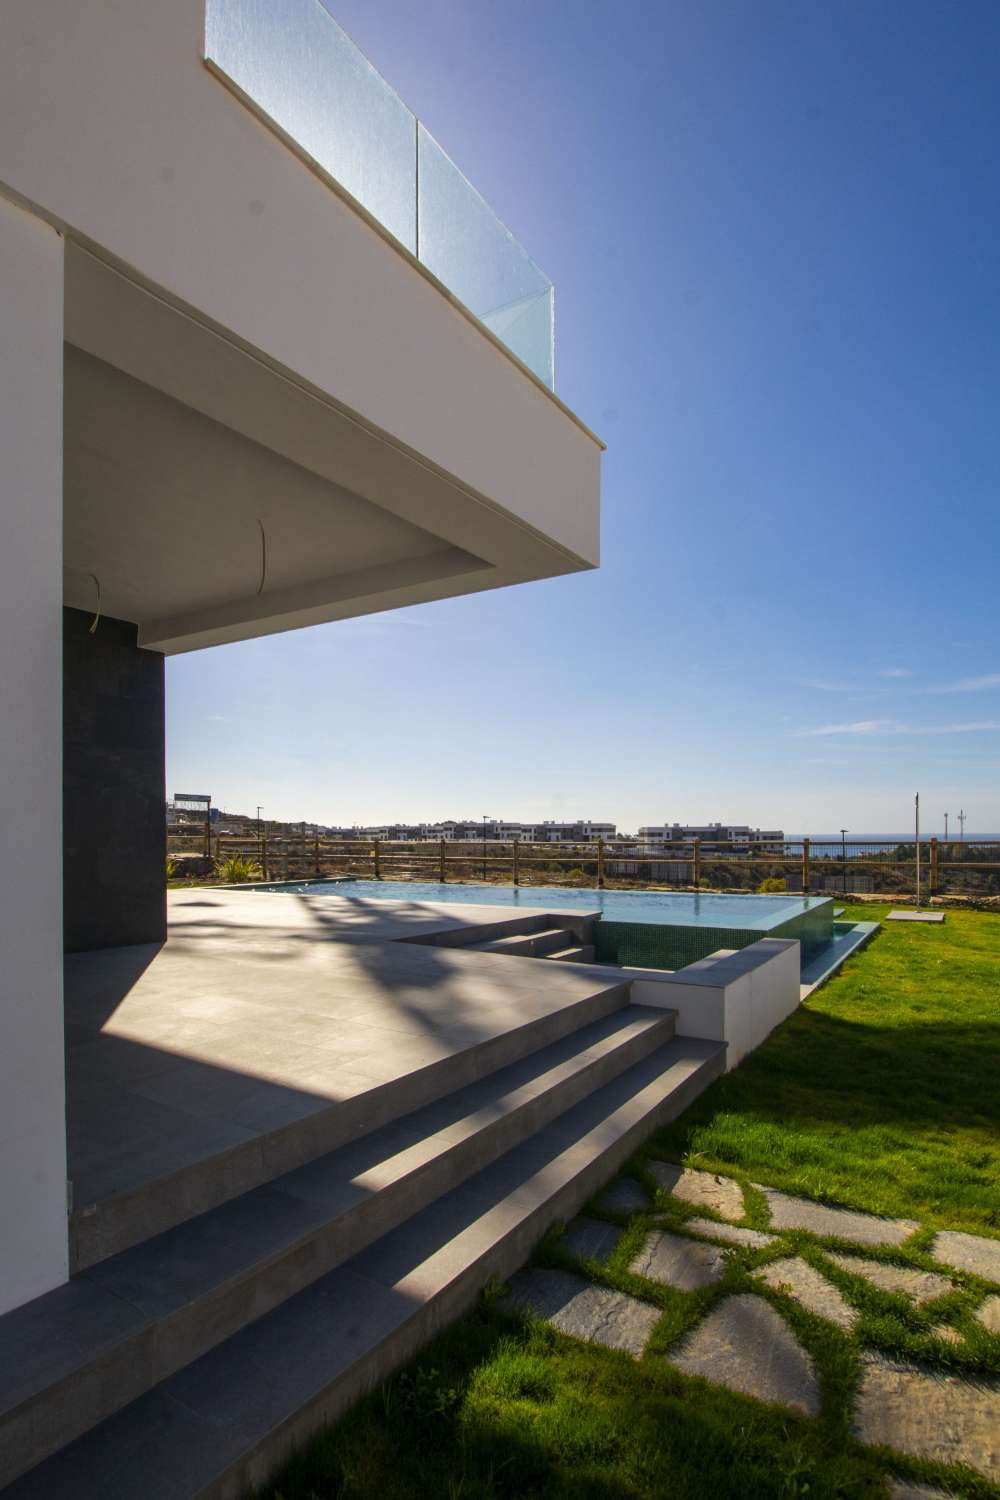 Beautiful contemporary villa with sea views in El Limonar, Malaga